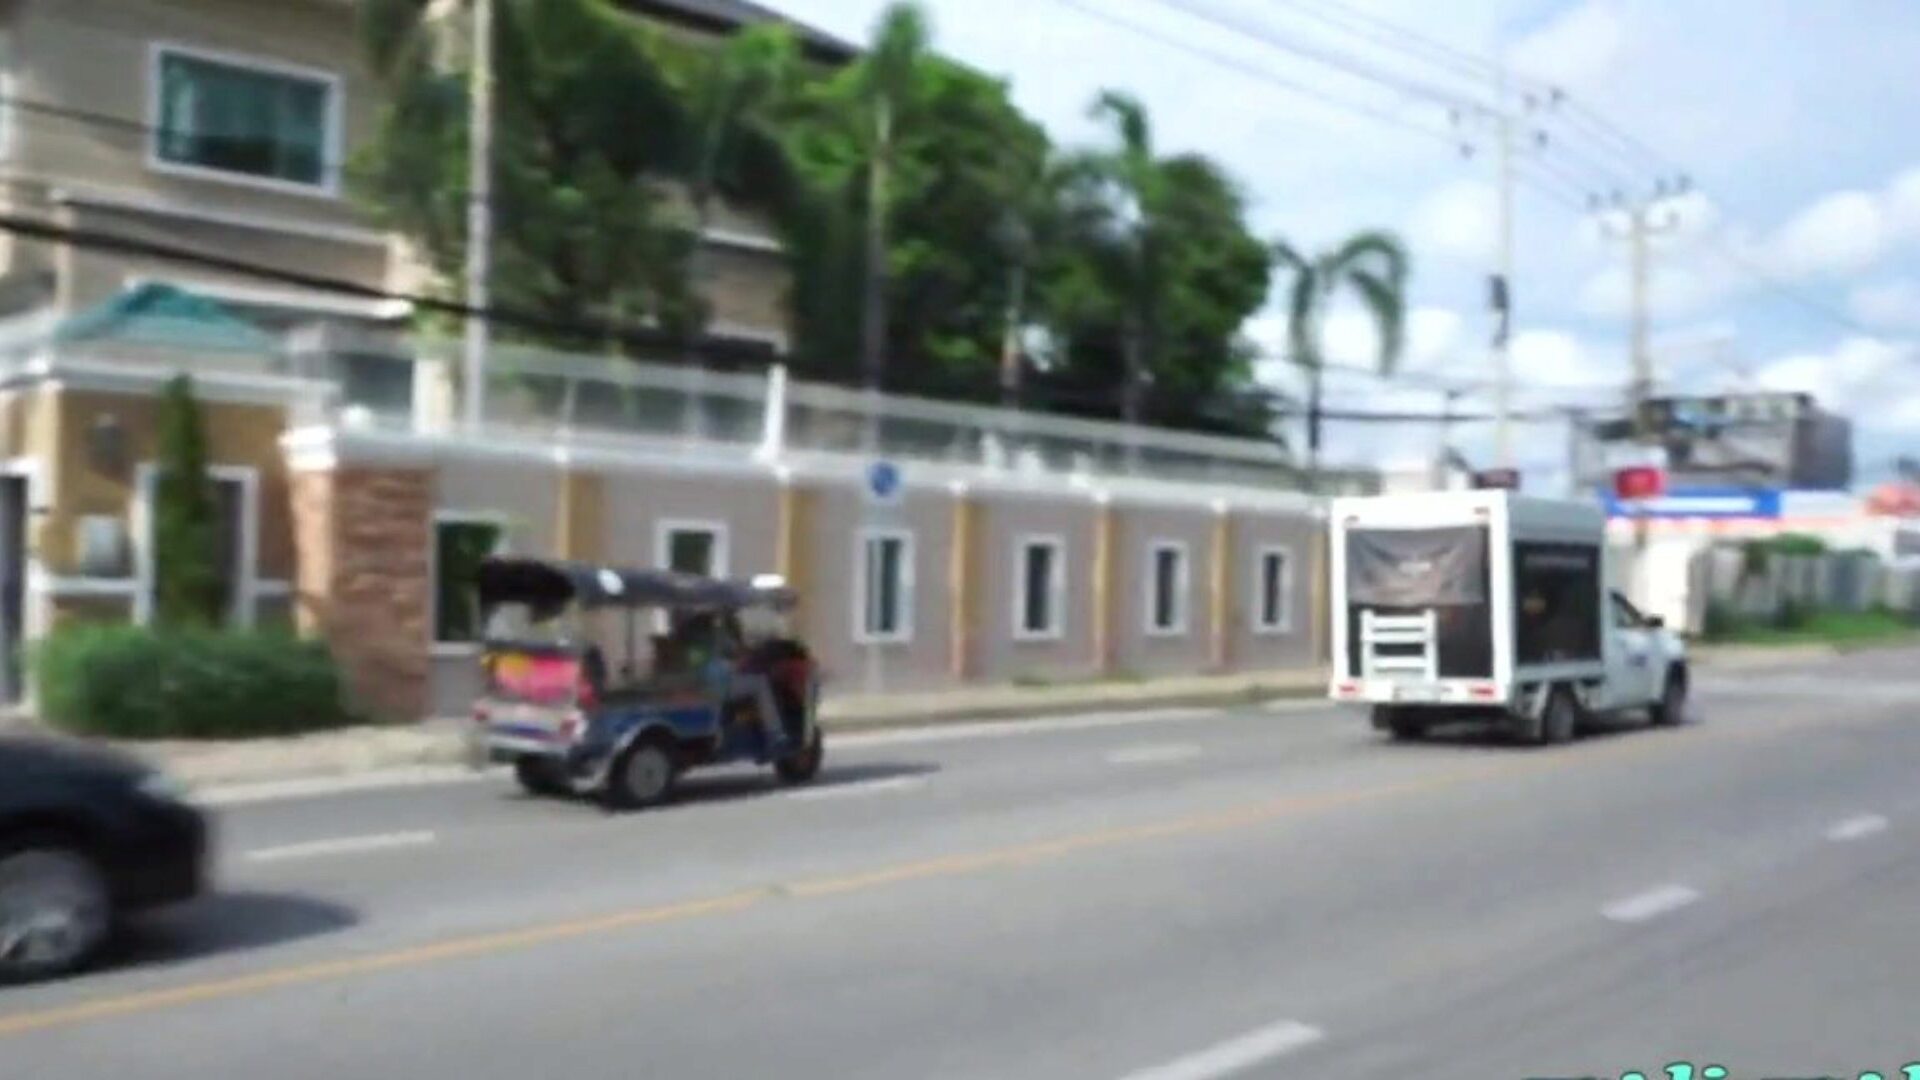 tuktukpatrol pinay spinner má dary: hd porno 9c hodinky tuktukpatrol pinay spinner má dary filmová scéna na xhamsteru - dokonalá databáze bezplatných asijských nových pinay hd hardcore porno videí